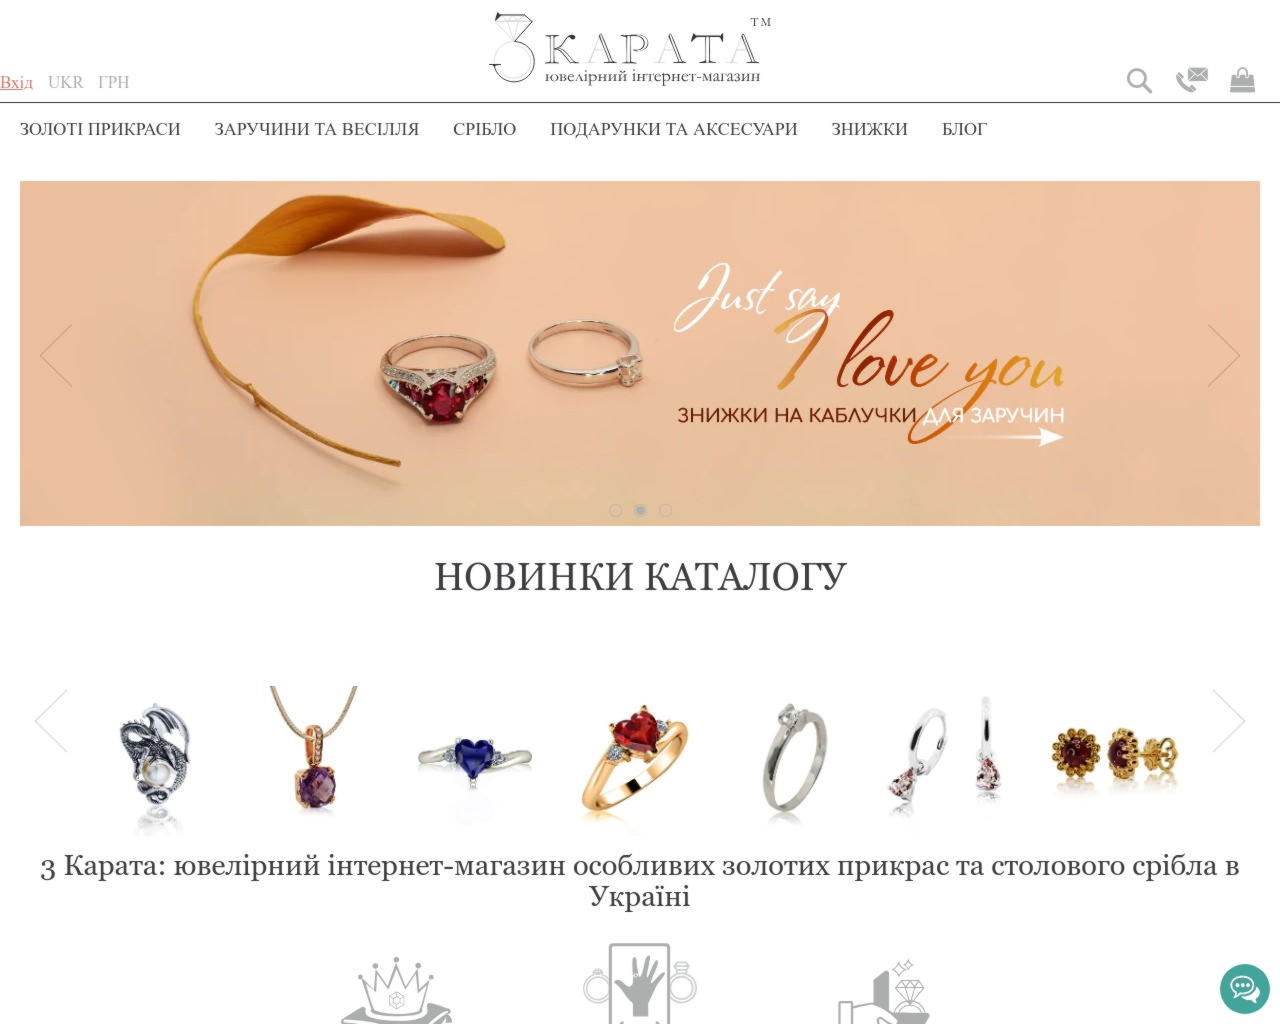 Изображение скриншота сайта - 3 Карата, ювелирный интернет-магазин в Украине